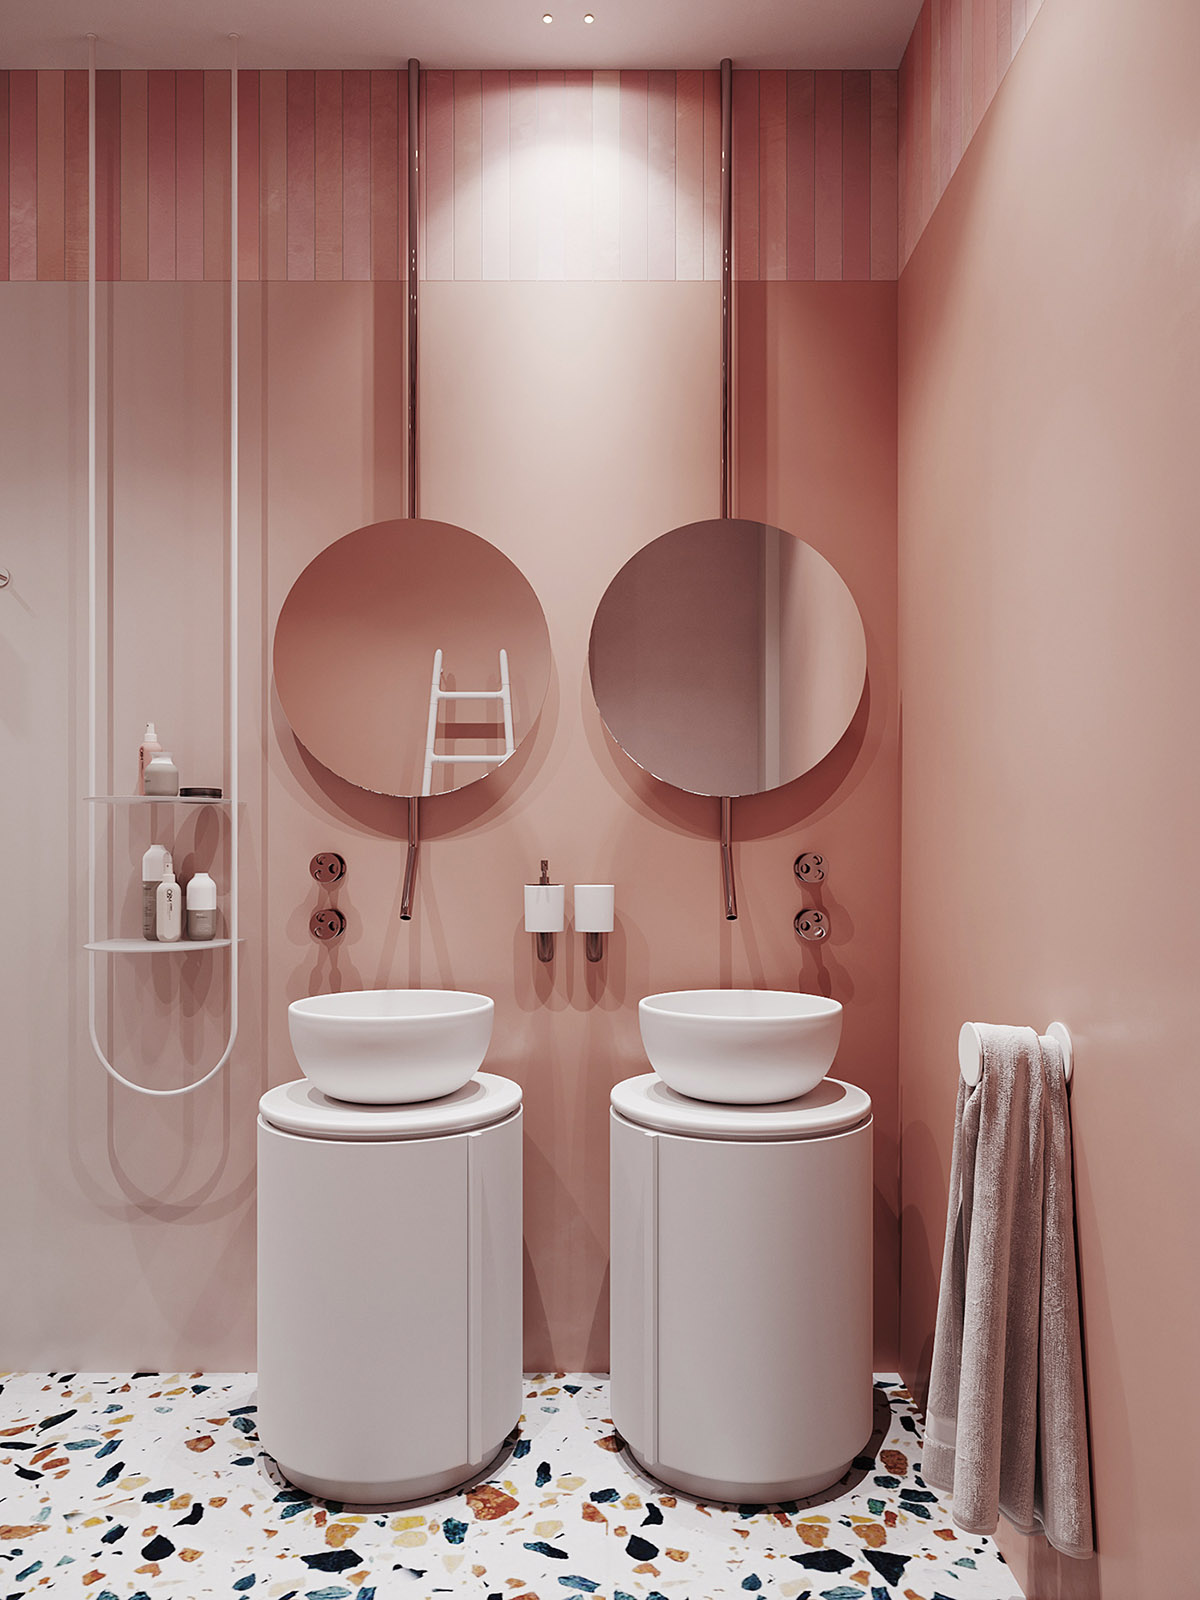 Hình ảnh một góc phòng tắm với tường sơn màu cam san hô, 2 gương tròn, phía dưới là hai bồn rừa tròn đặt trên các trụ màu trắng.